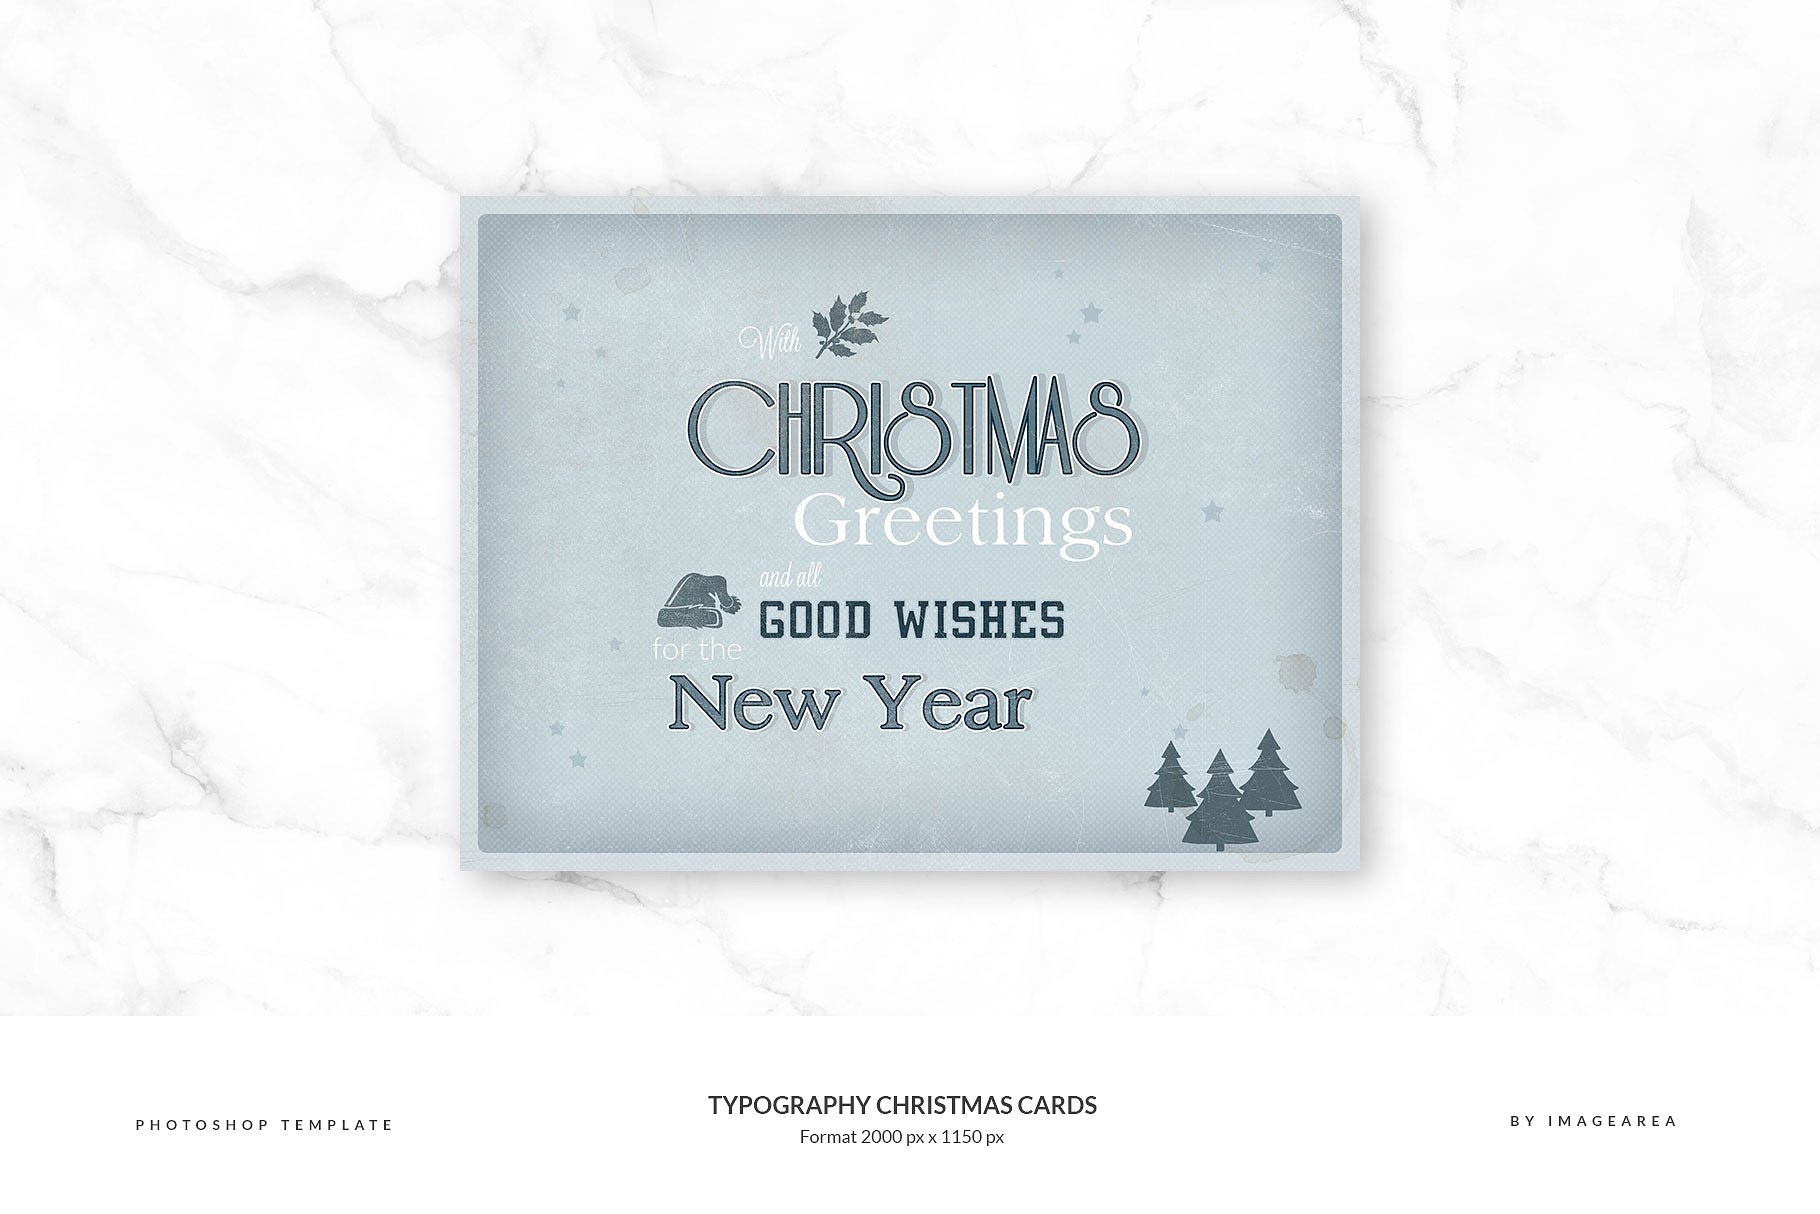 古典风格圣诞节活动贺卡模板 Typography Christmas Cards插图(3)